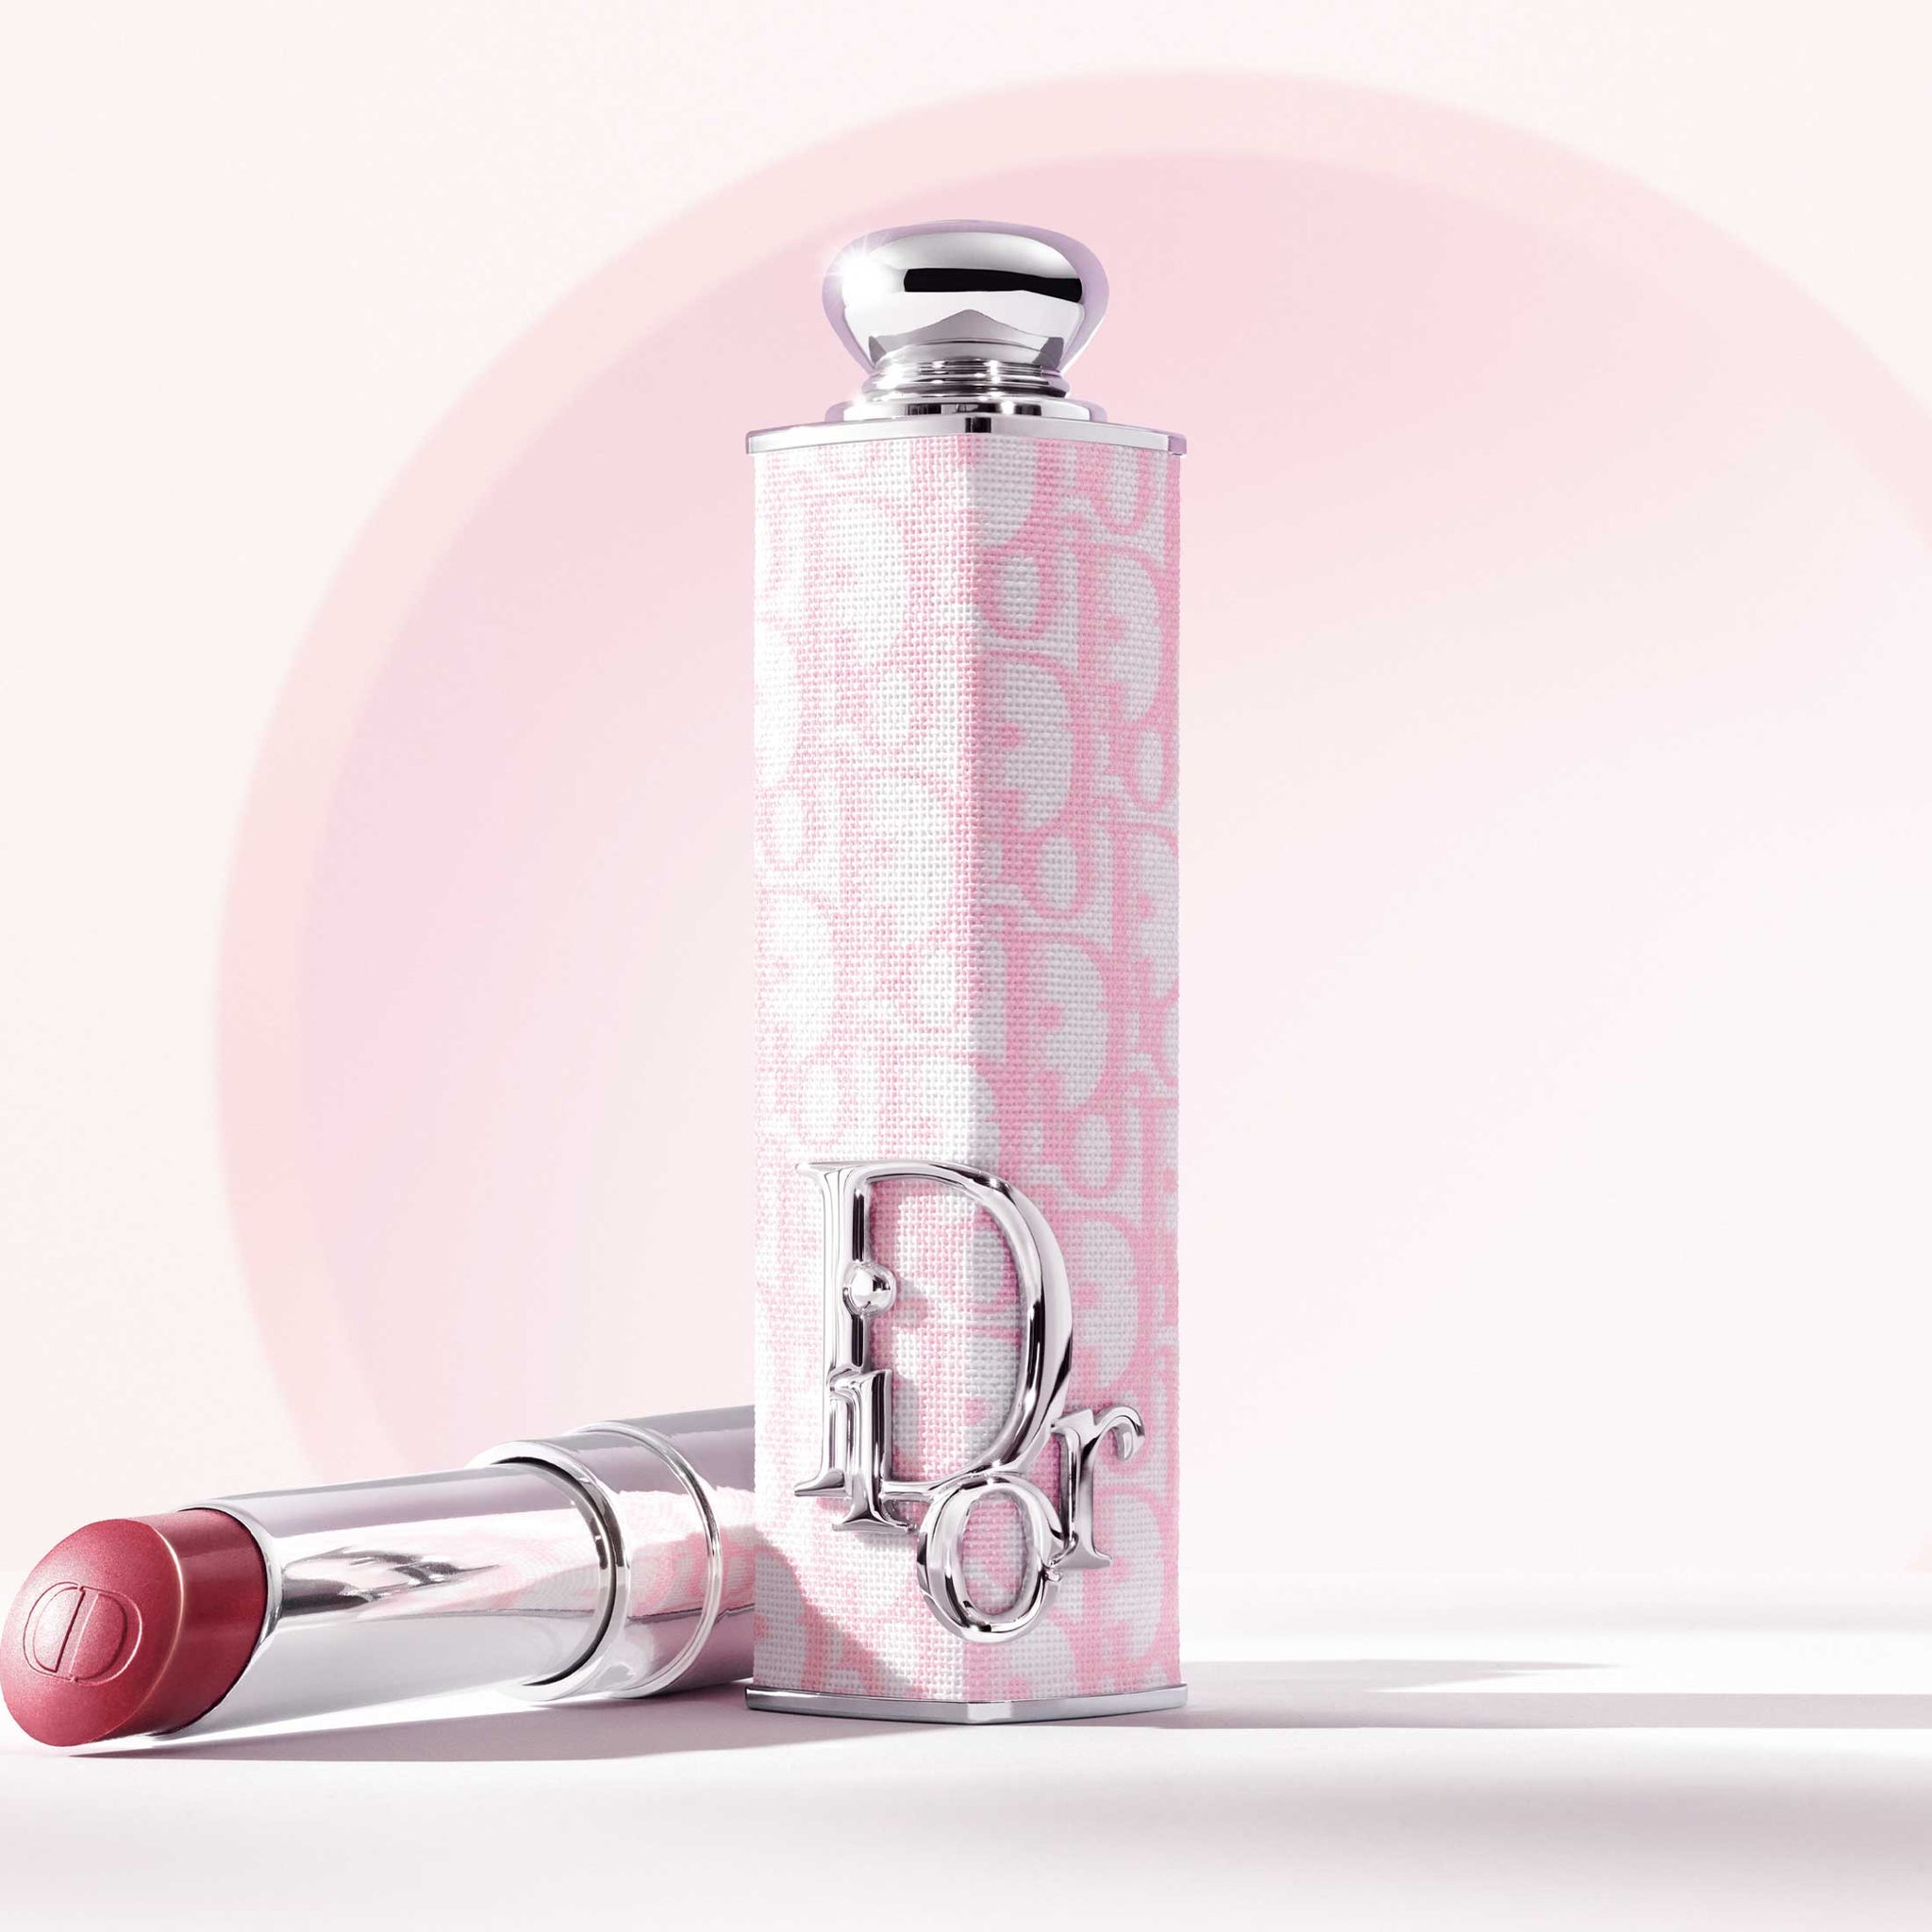 DIOR ADDICT CASE ~ Shine Lipstick Couture Case - Refillable